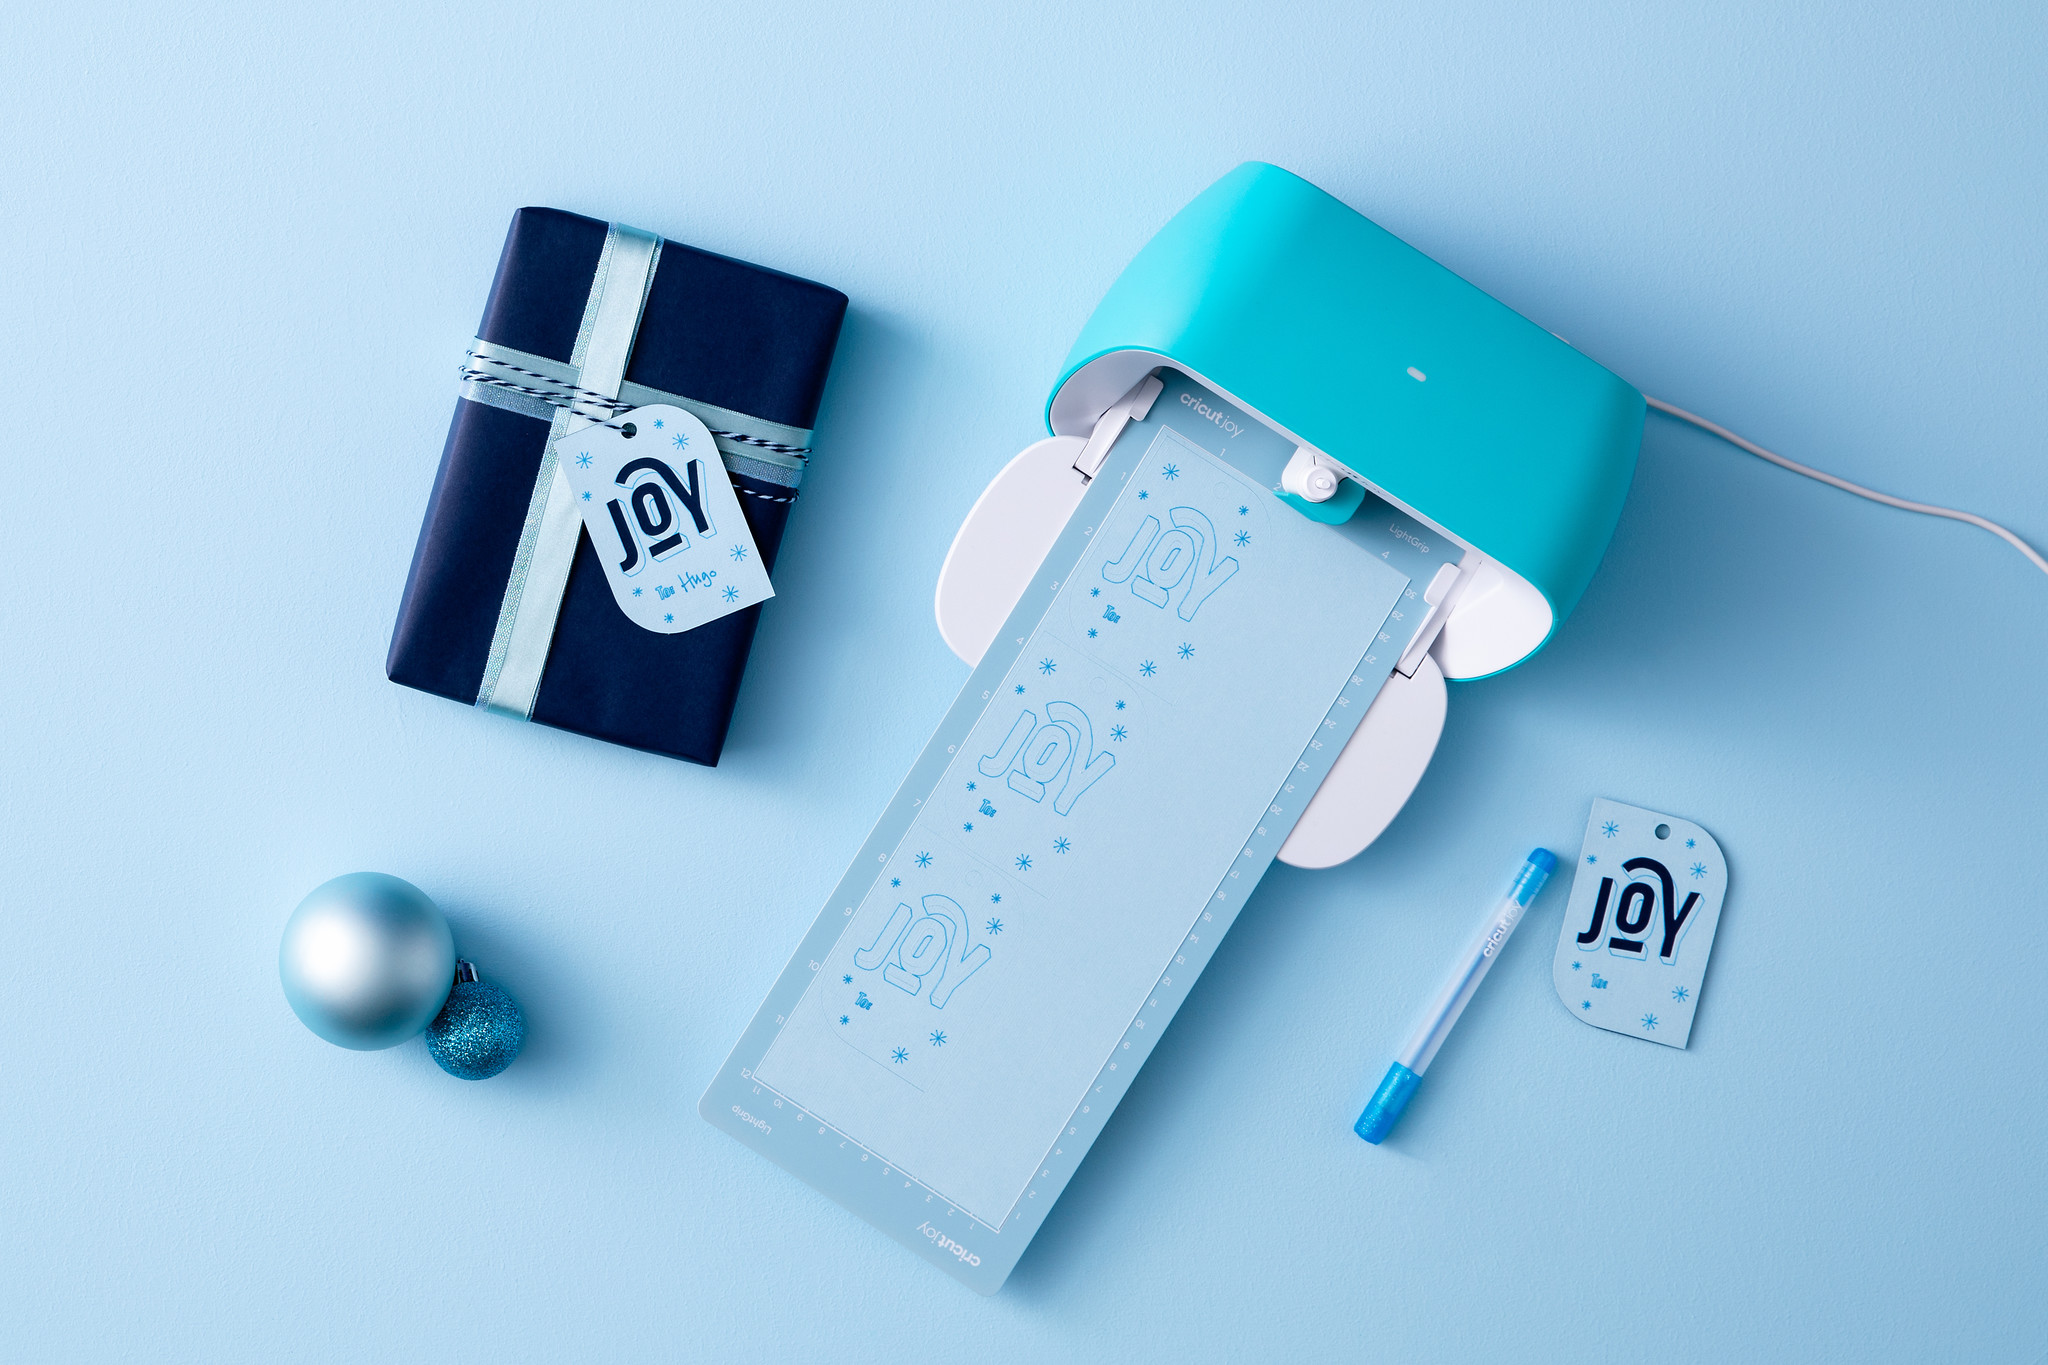 Cricut introduceert Cricut Joy Xtra™, met nieuwe materialen en